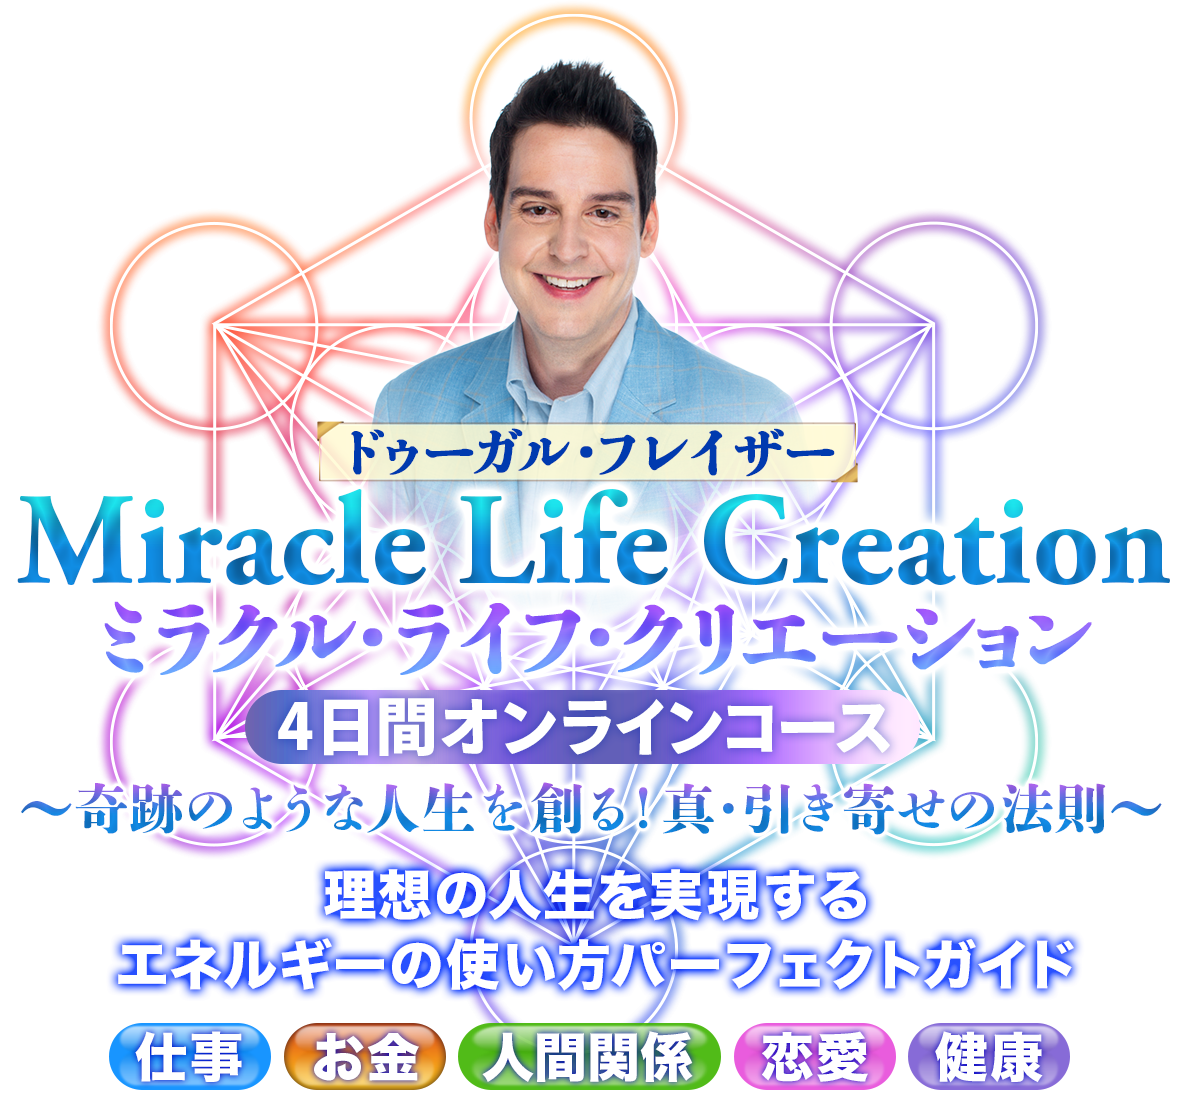 ミラクル・ライフ・クリエーション
4日間オンラインコース
 Miracle Life Creation
〜奇跡のような人生を創る！真・引き寄せの法則〜
